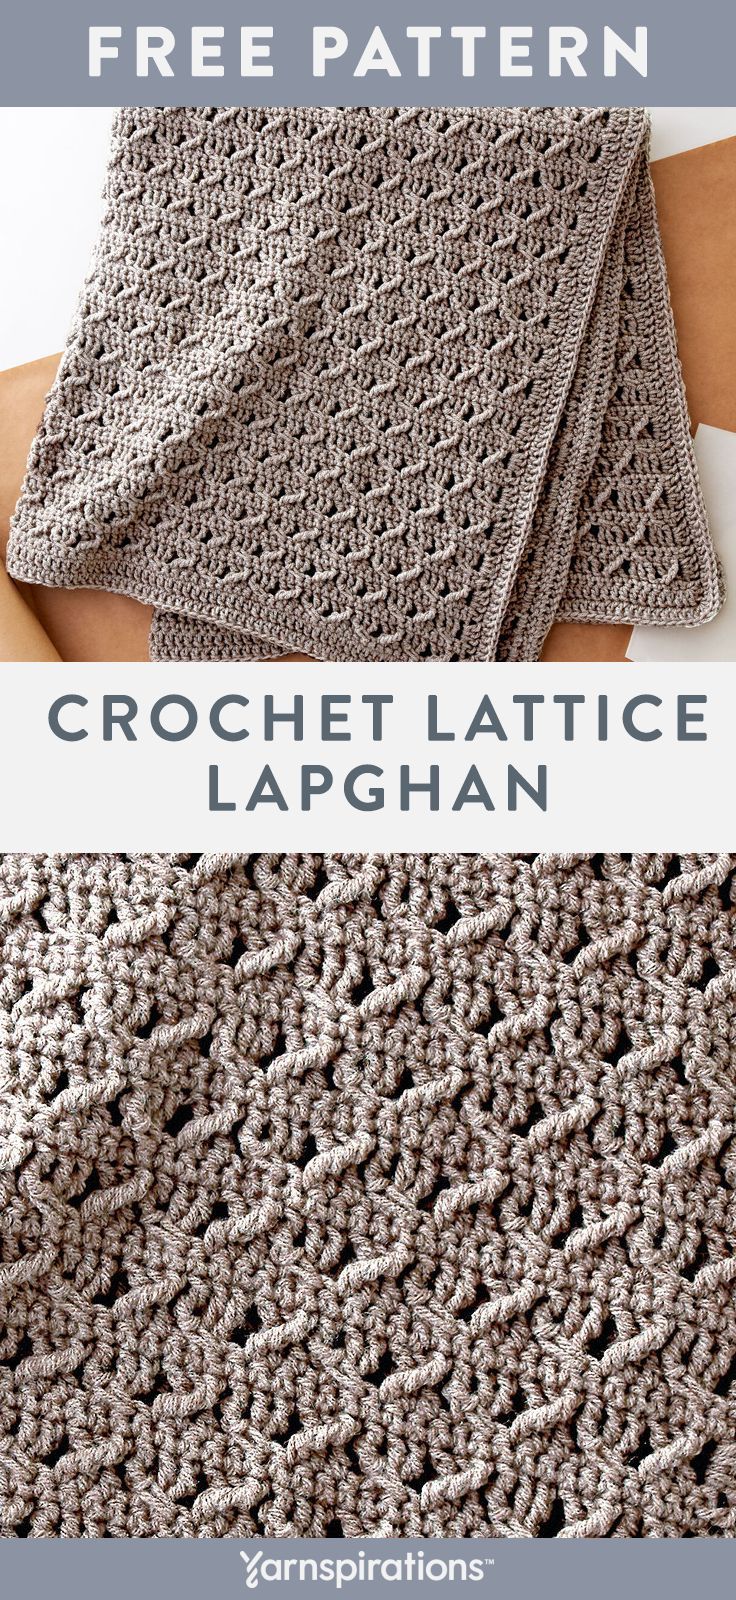 Free-Crochet-Pattern.jpg